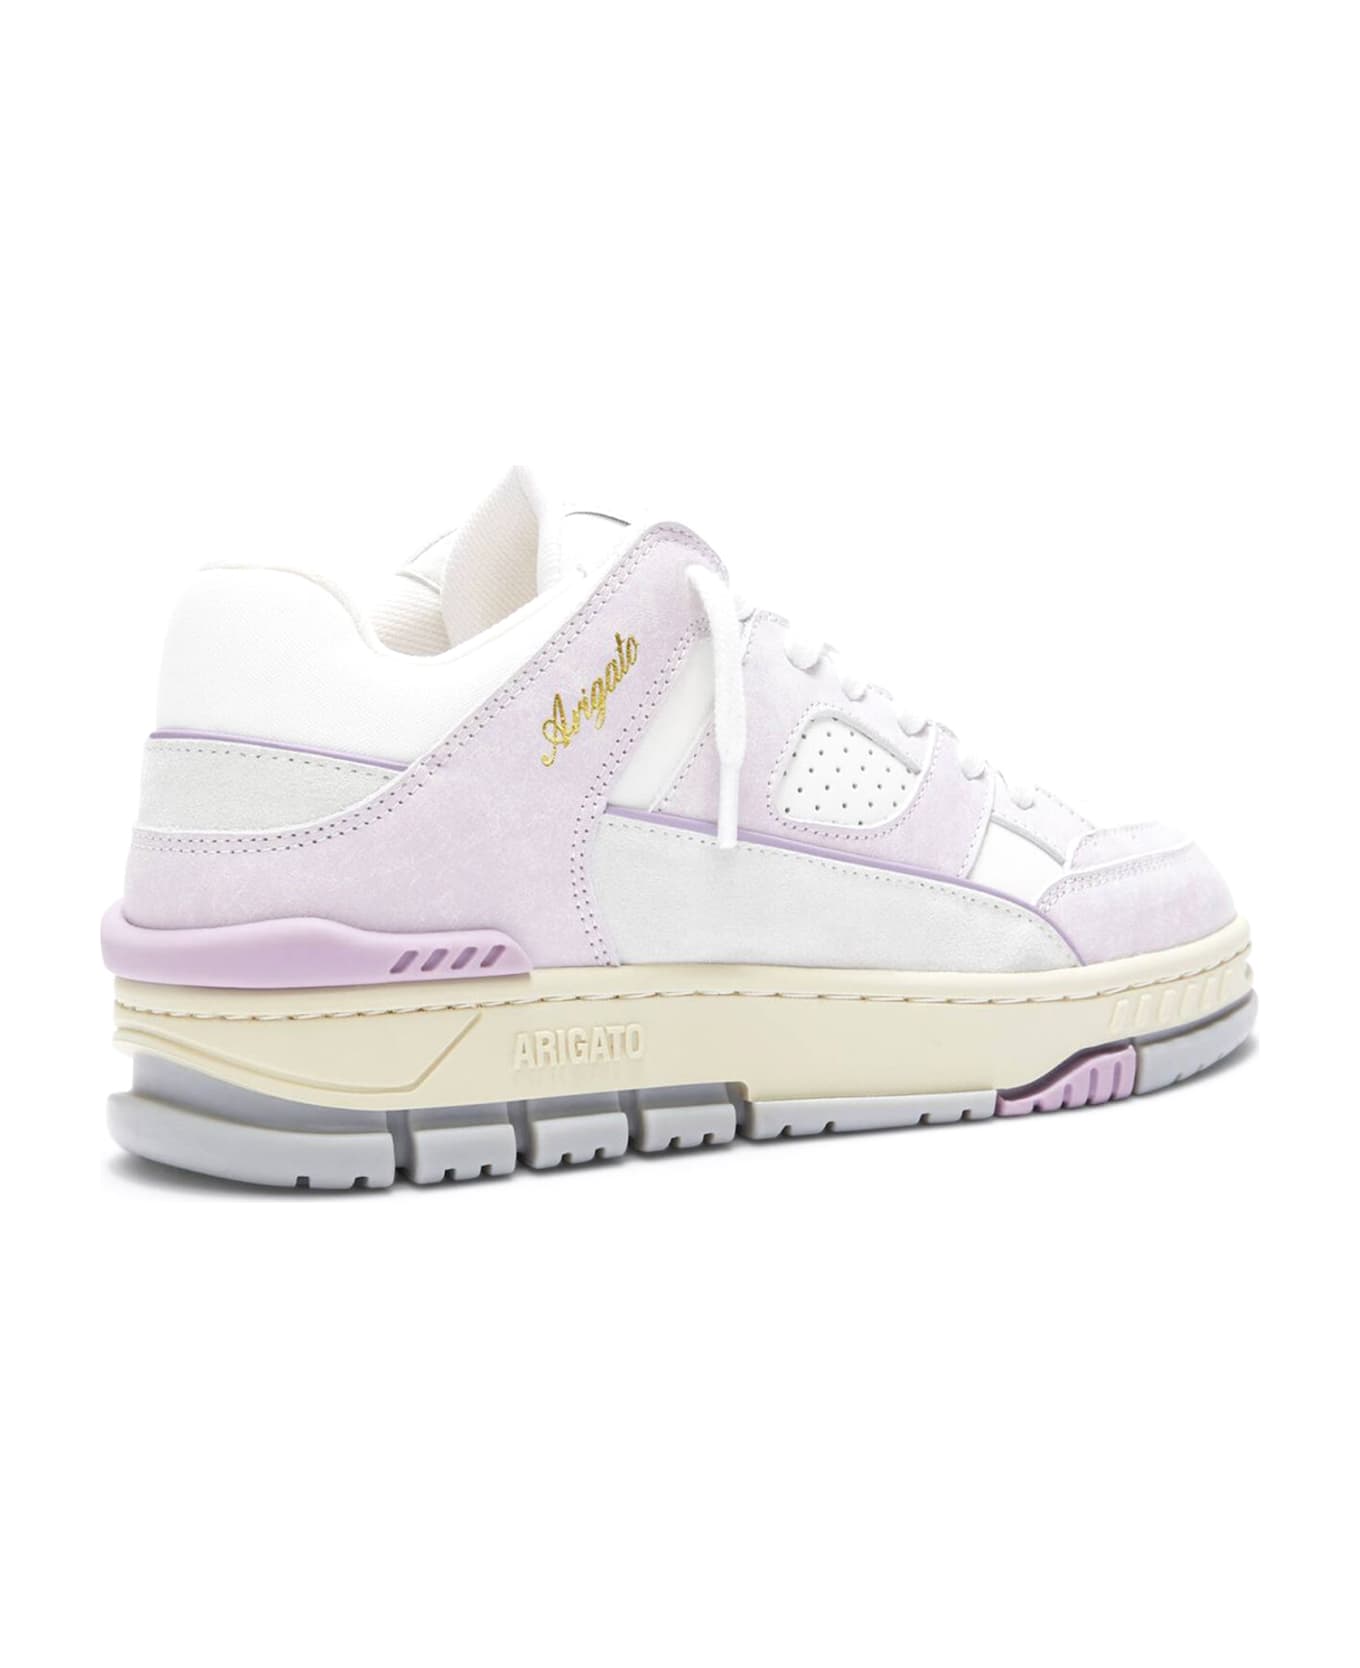 Axel Arigato White And Lilac Area Lo Sneaker - White